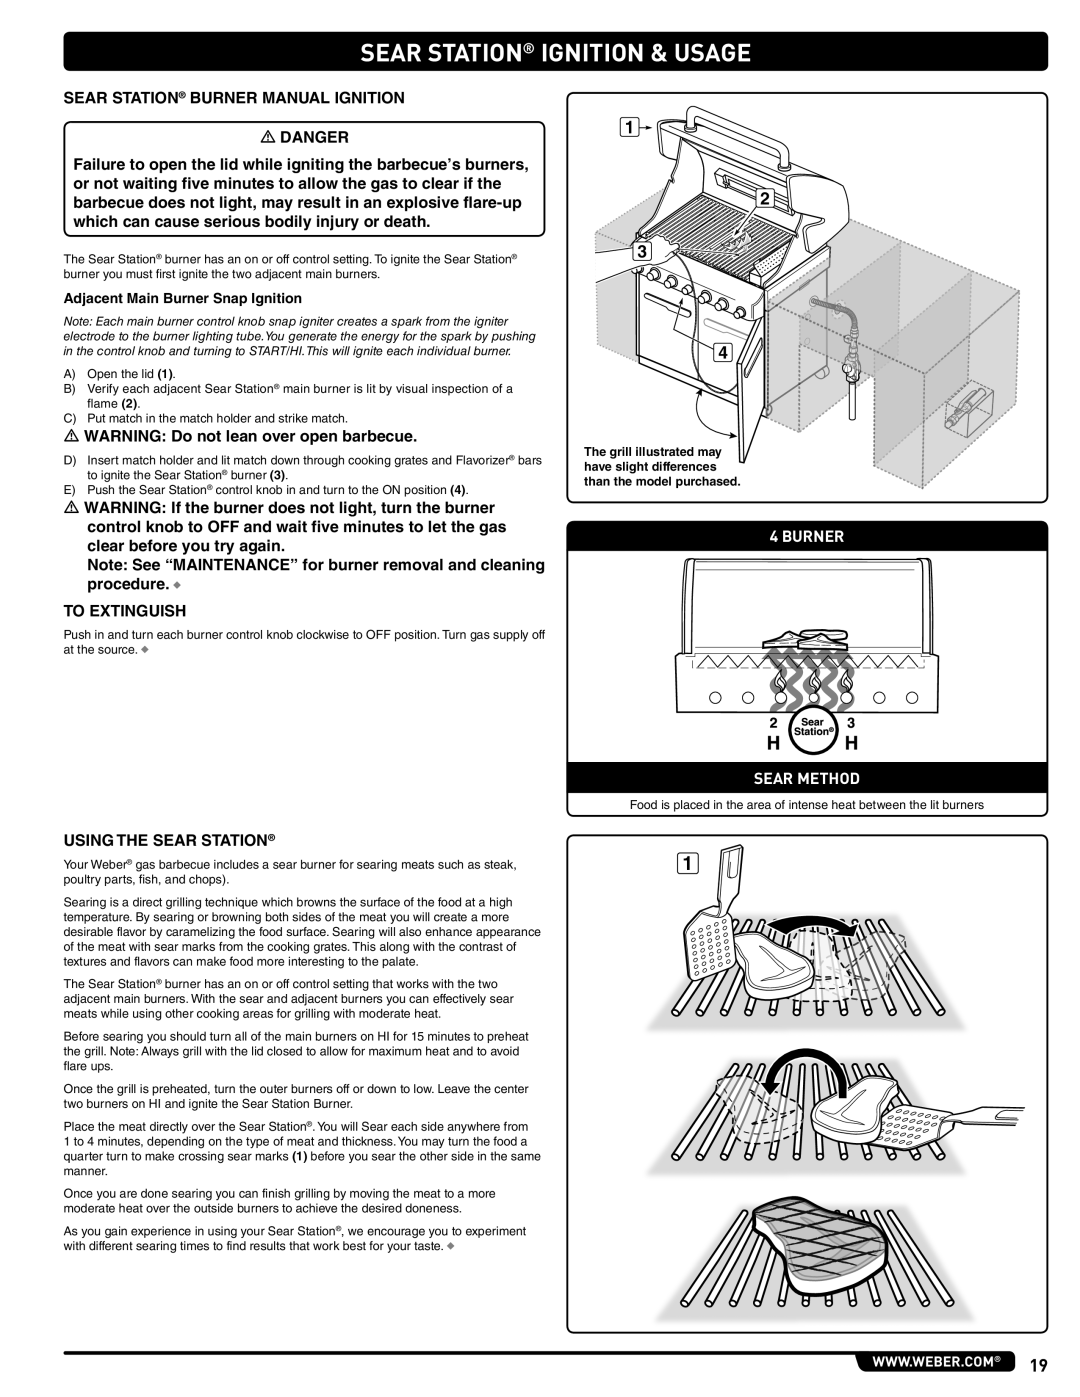 Weber 56576, Summit Gas Grill manual Sear Station Ignition & Usage, Burner Sear Method 